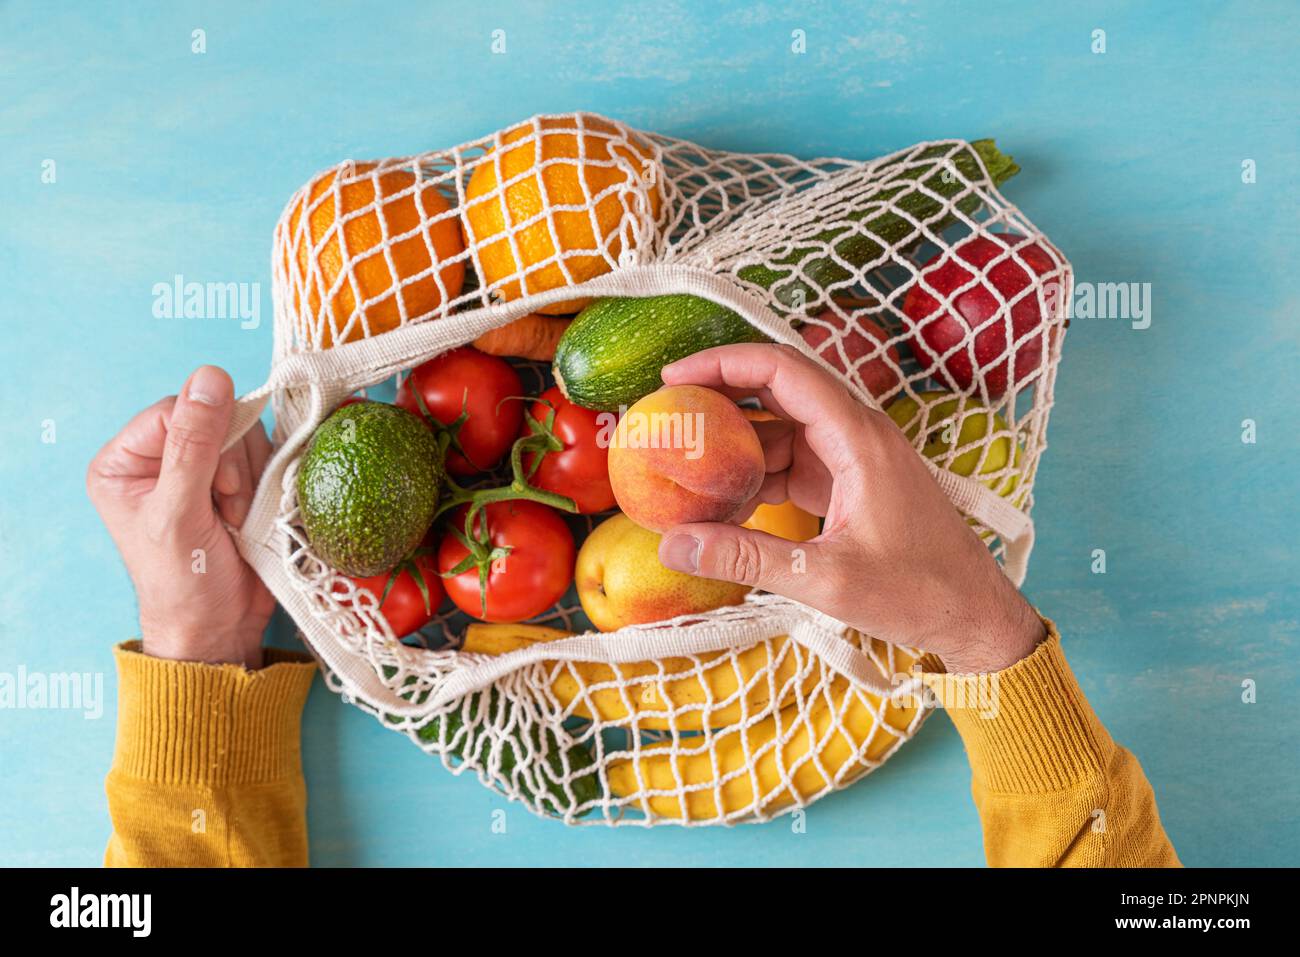 Männerhandgelenk, das Pfirsichfrucht aus einer Mesh-Einkaufstasche mit Obst und Gemüse nimmt. Umweltfreundliches Einkaufen. Nachhaltiger Lebensstil, keine Abfälle, plastikfrei Stockfoto